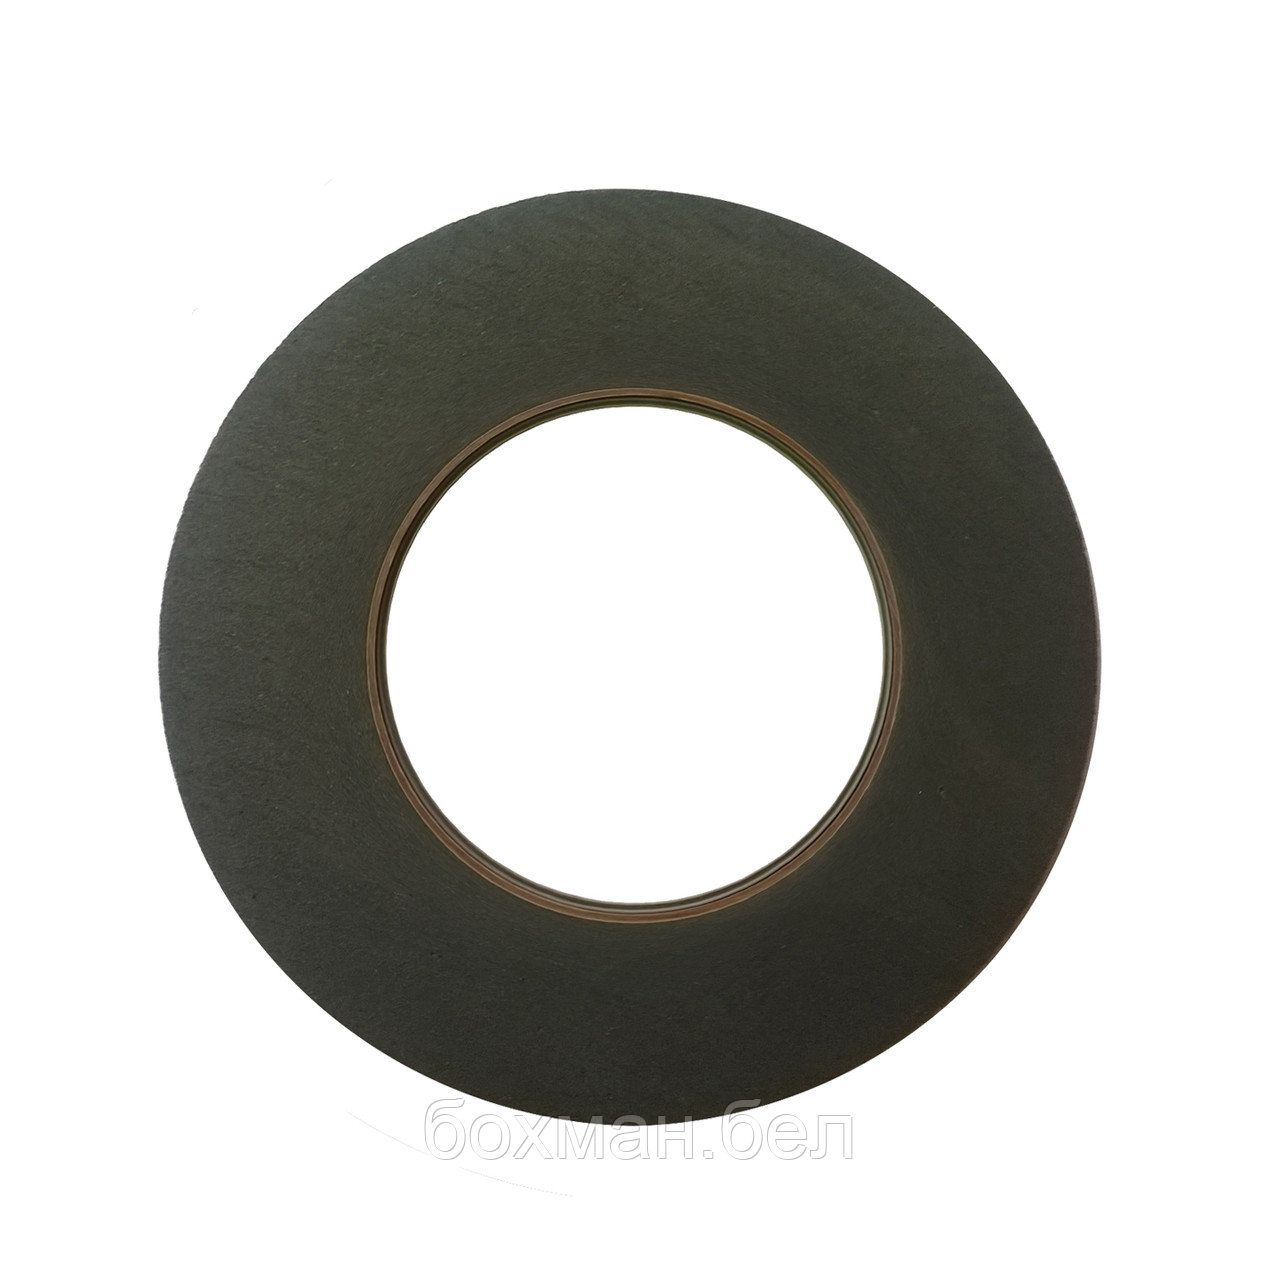 Шлифовальный круг для снятия Low-e покрытия 125x10x76.2